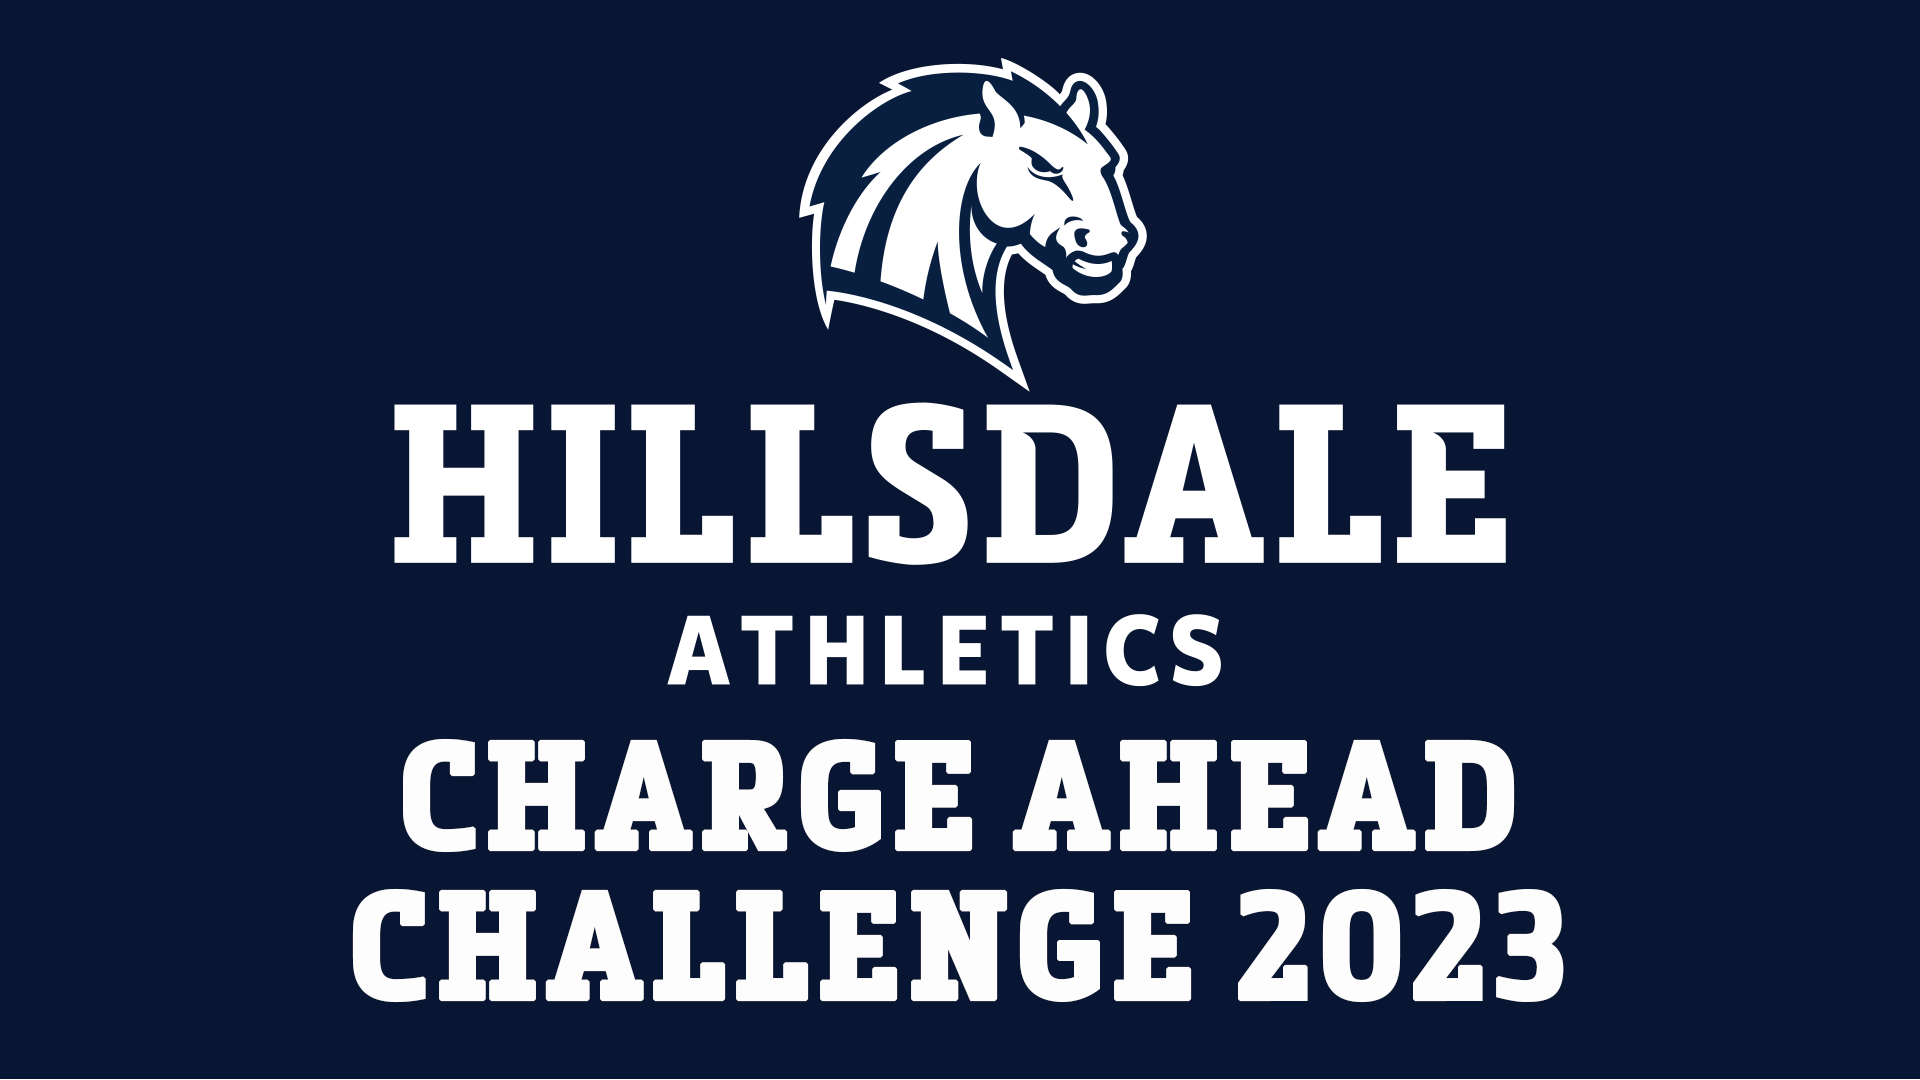 Charge Ahead Challenge 2023